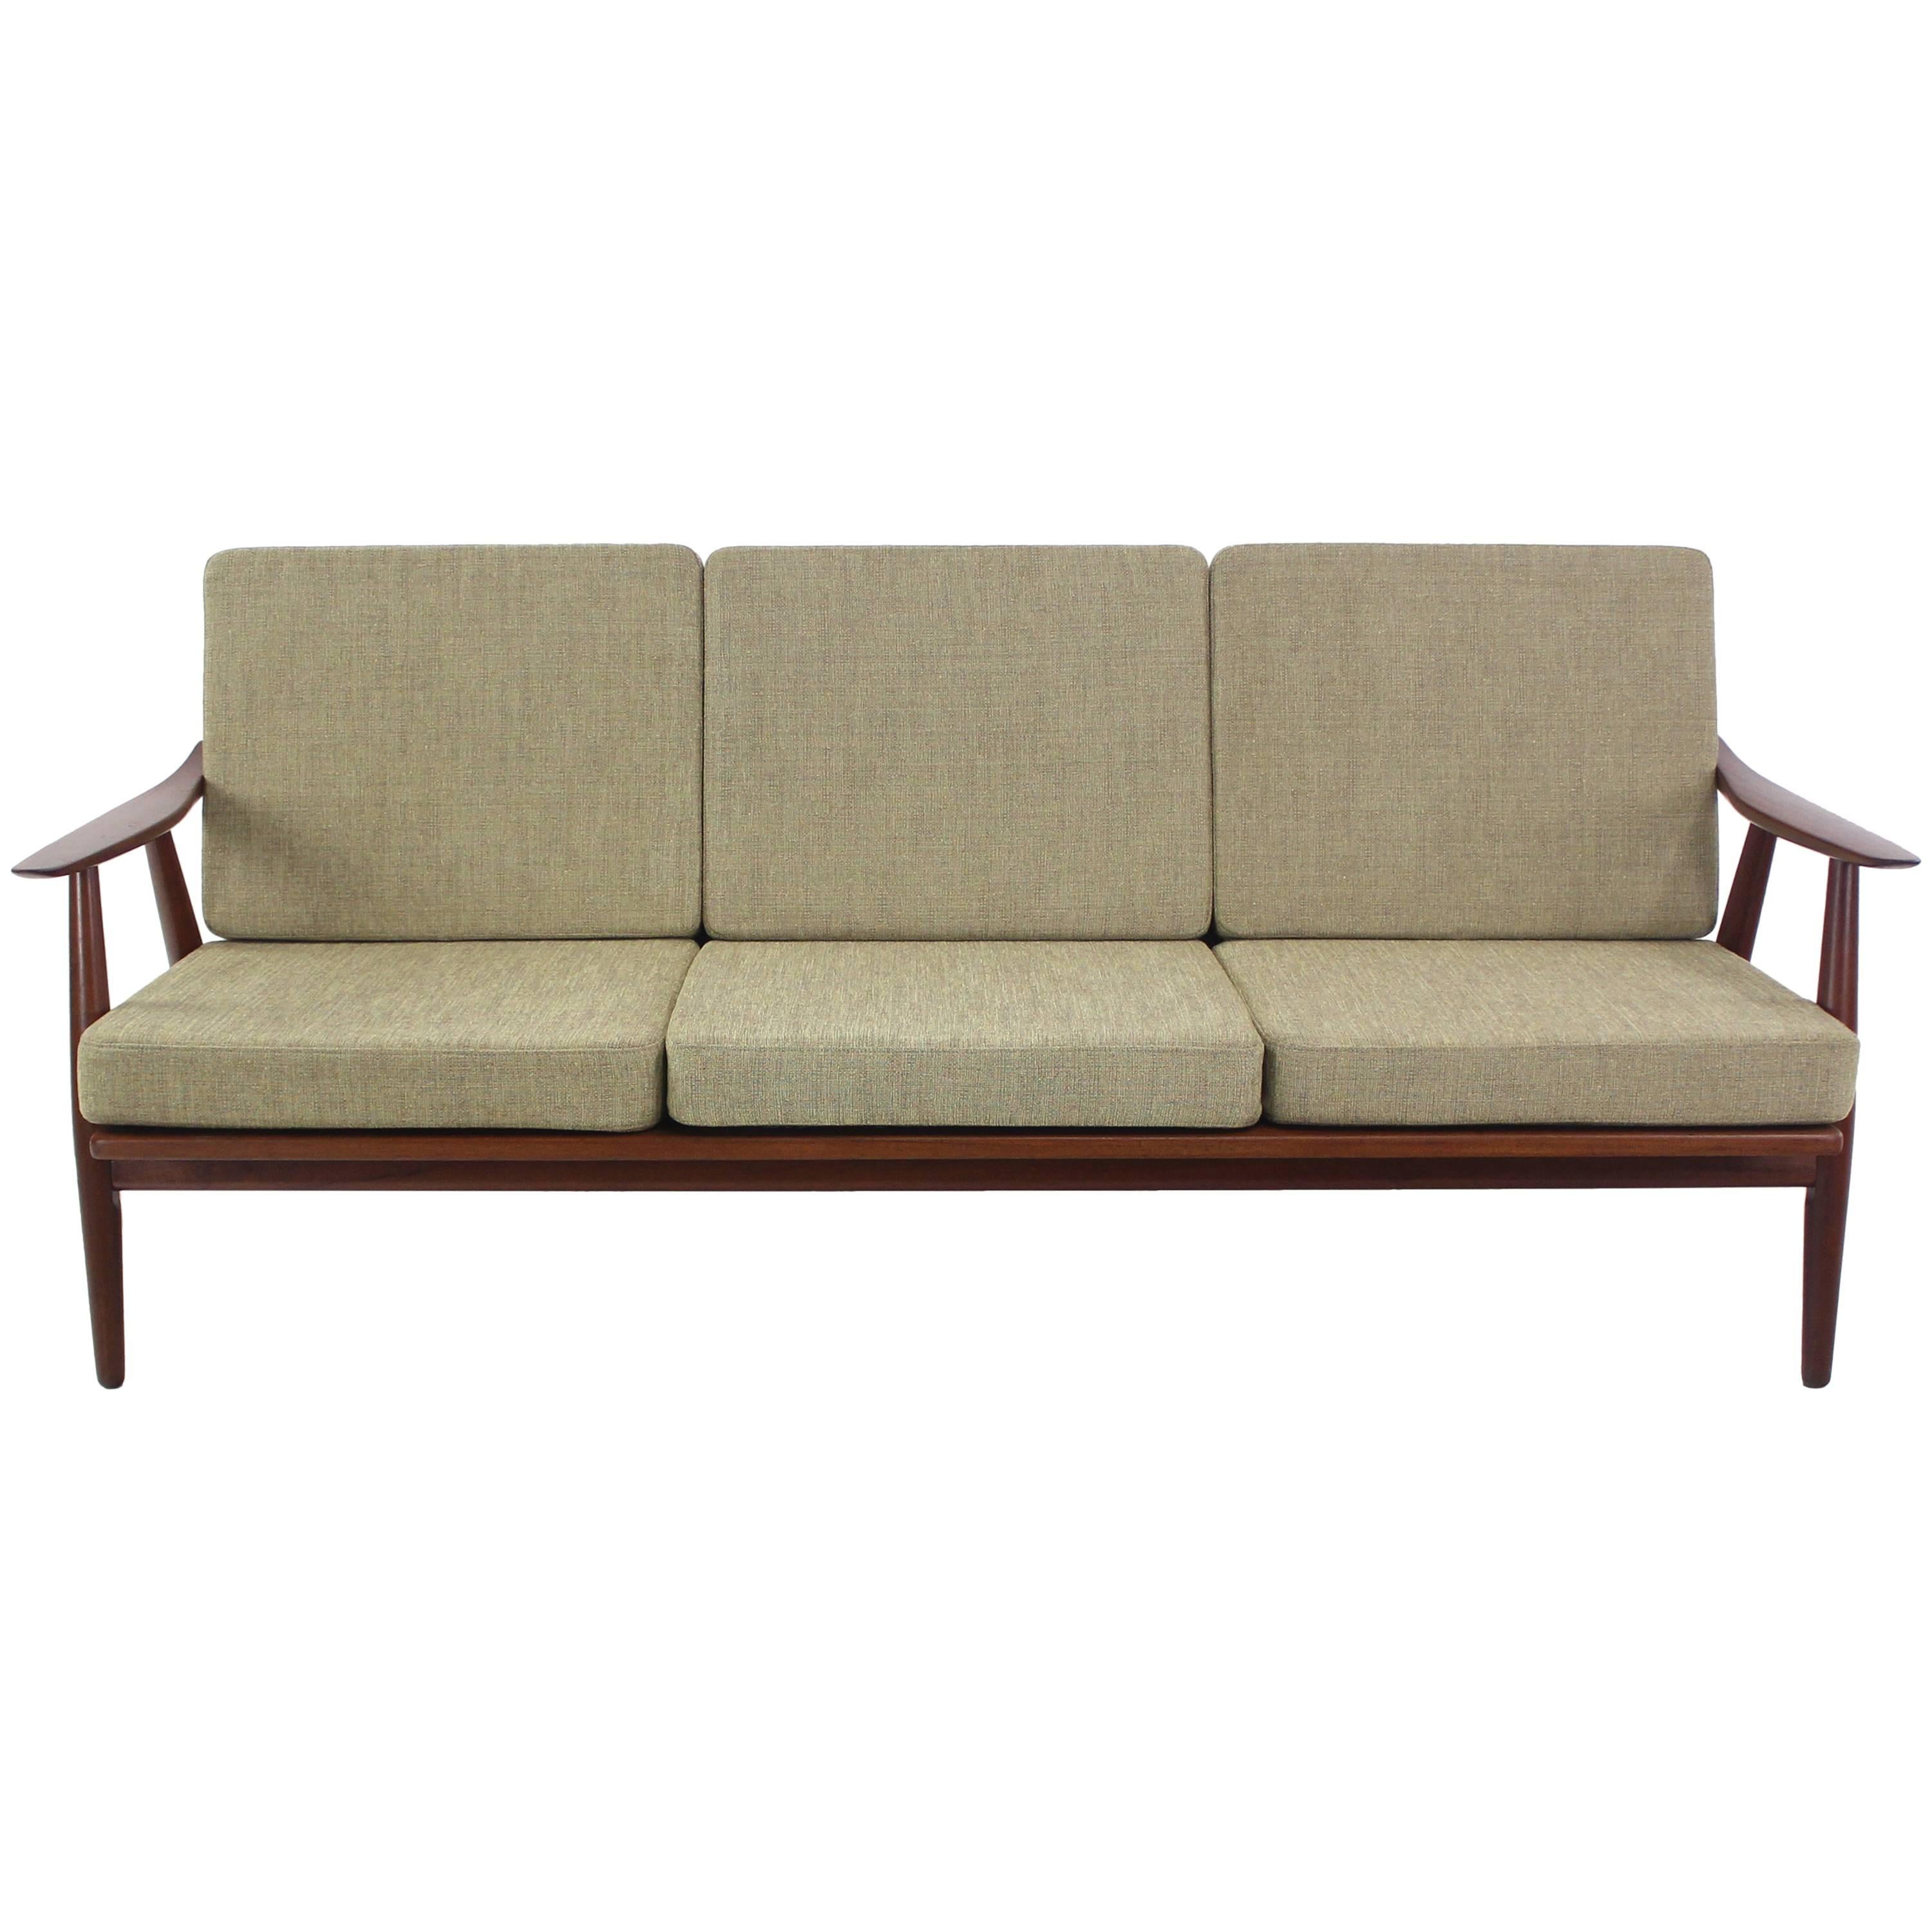 Danish Modern Teak Framed Sofa Designed by Hans Wegner For Sale